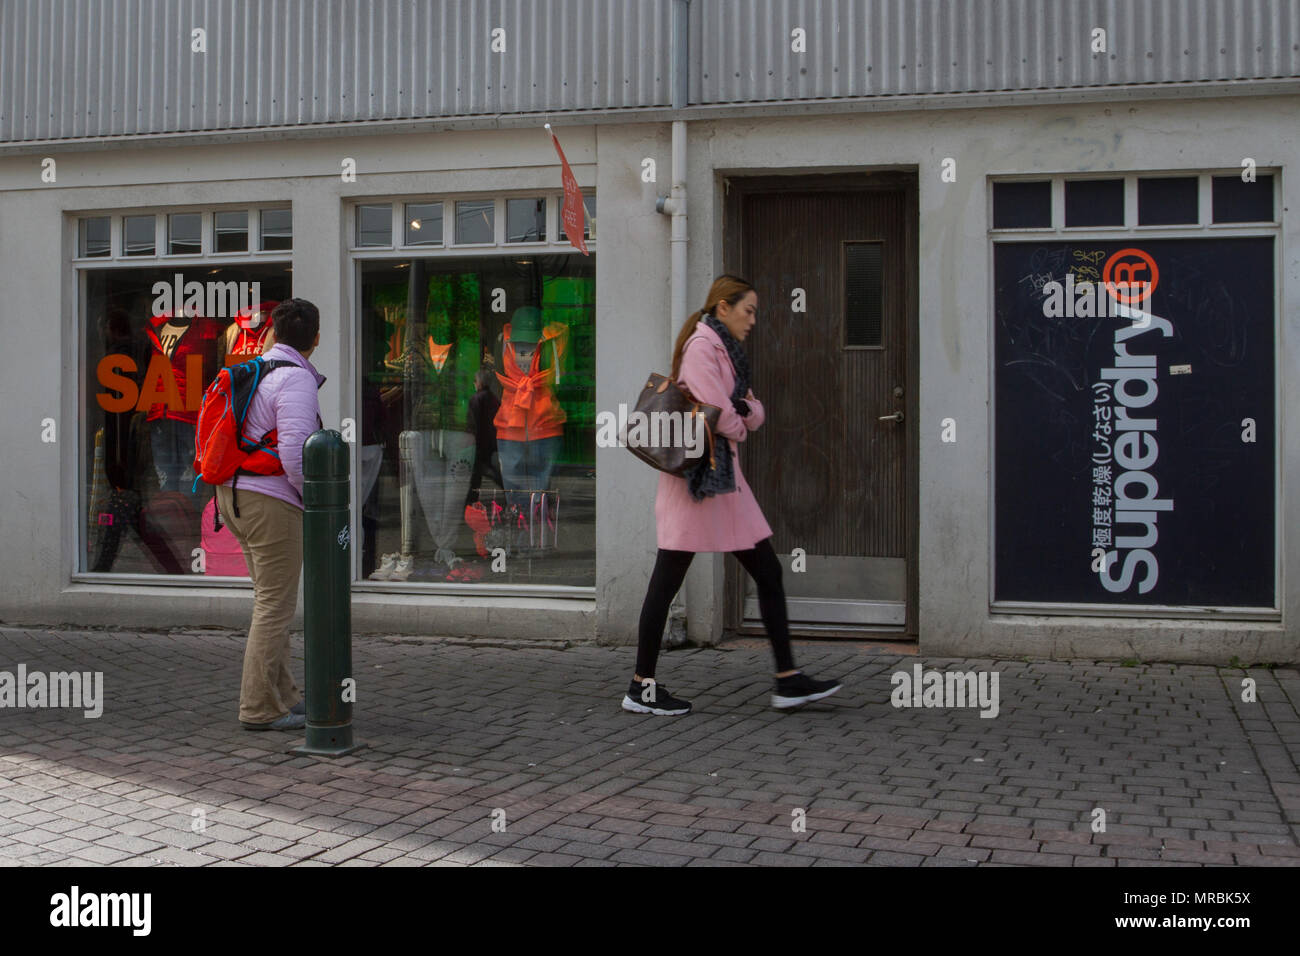 SuperDry business, Bekleidung Einzelhandel, Winter parka Jacken Bekleidung, Textilien, fashion Logo, Form & Branding Geschäfte, Einkaufen und Shopping in Reykjavik, Island, Stockfoto